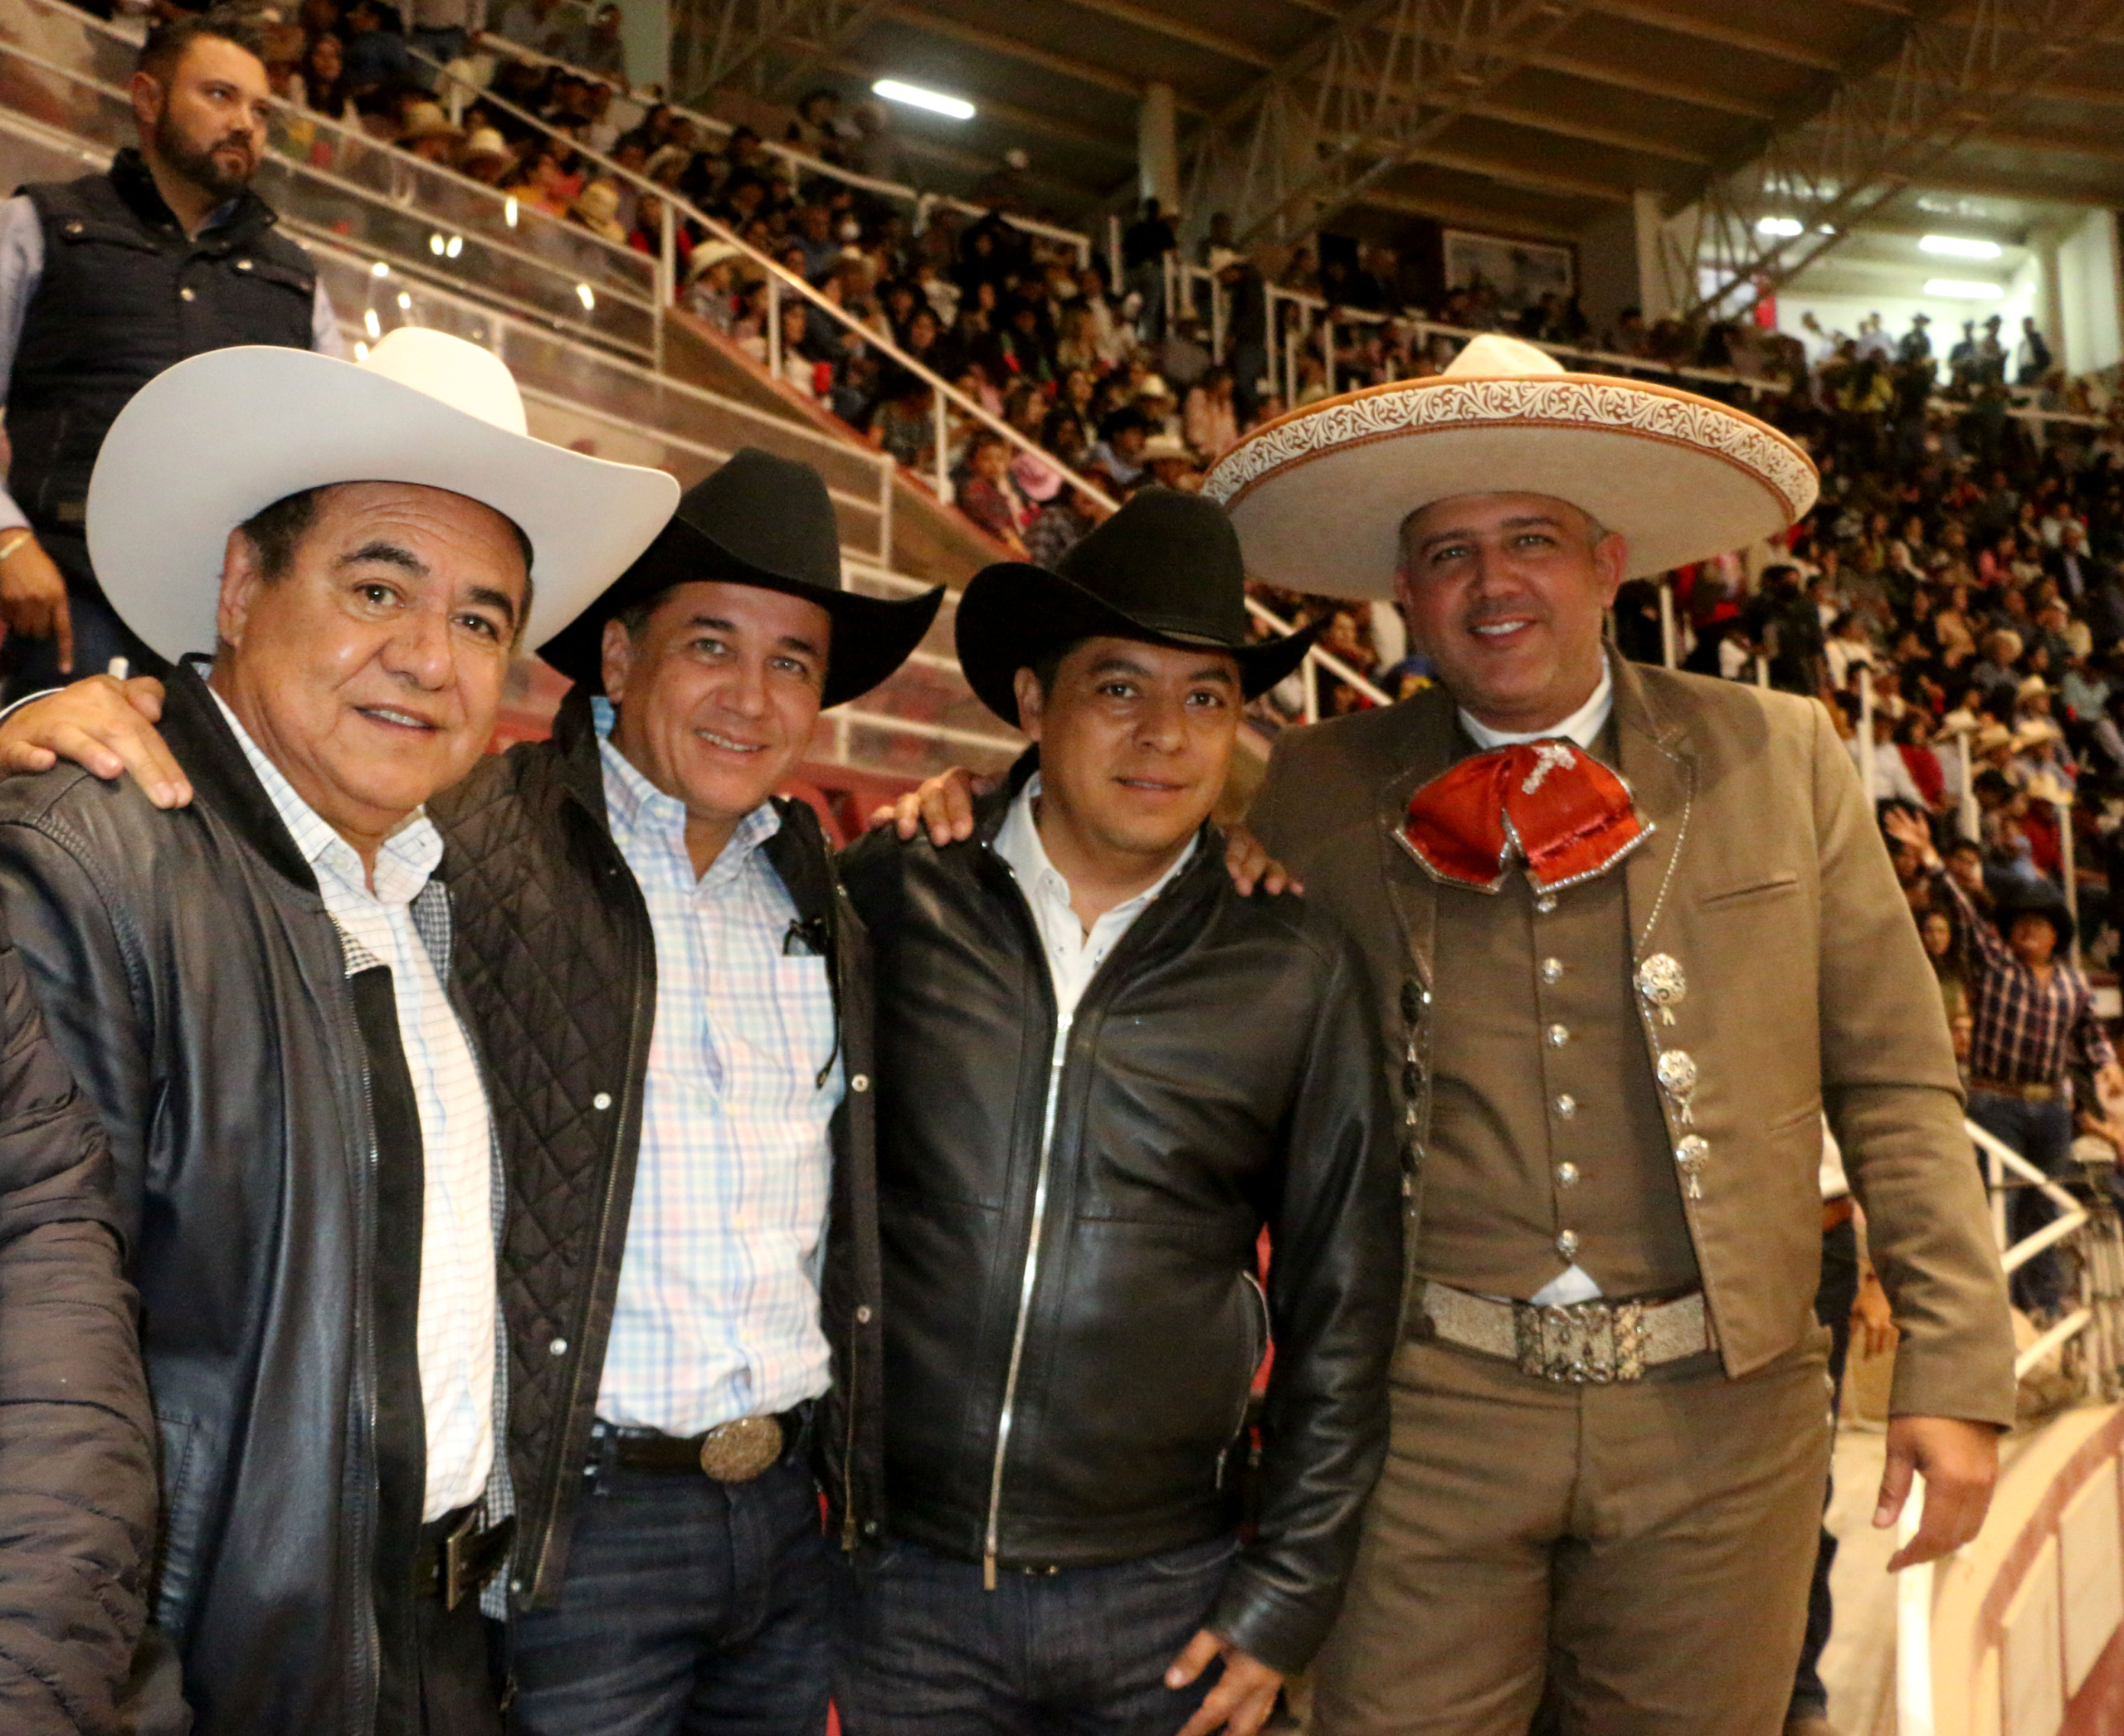 Asistió el gobernador de San Luis Potosí, Ricardo Gallardo Cardona, acompañado por el presidente de la Federación Mexicana de Charrería, José Antonio Salcedo López